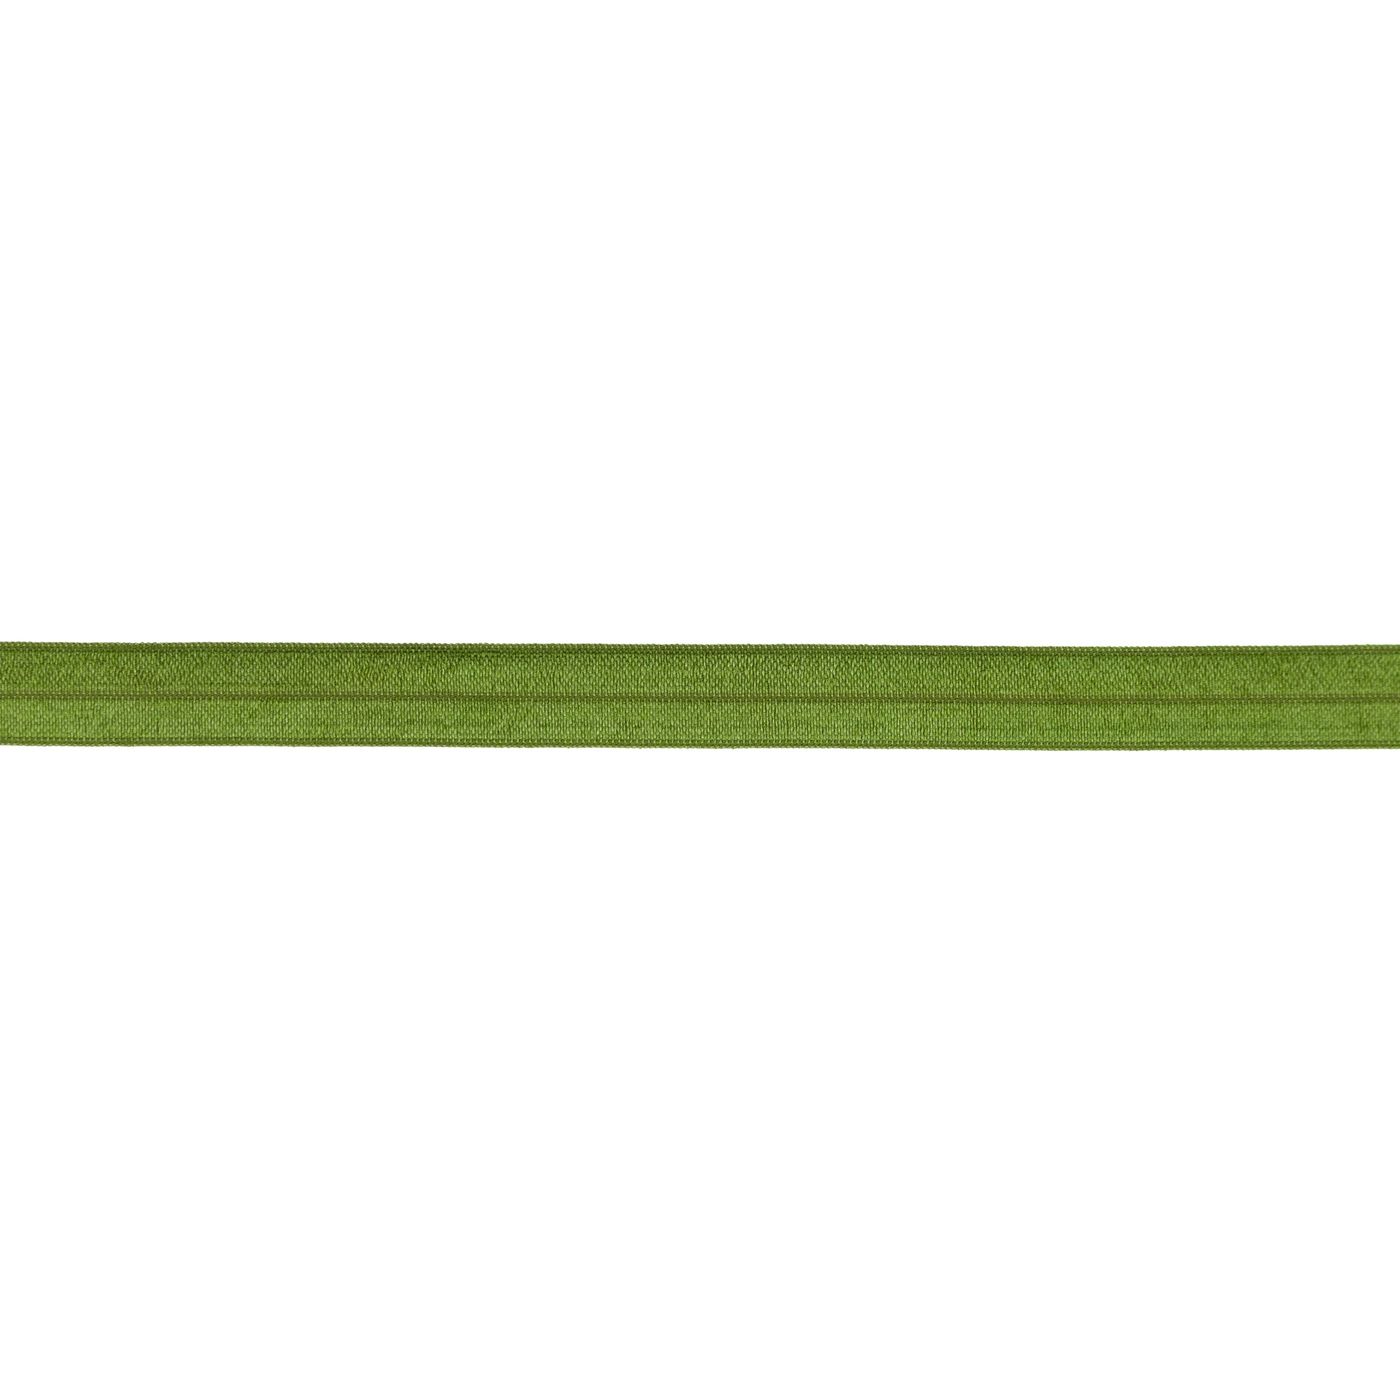 Elastisches Einfassband glänzend Farbe Moos-Grün